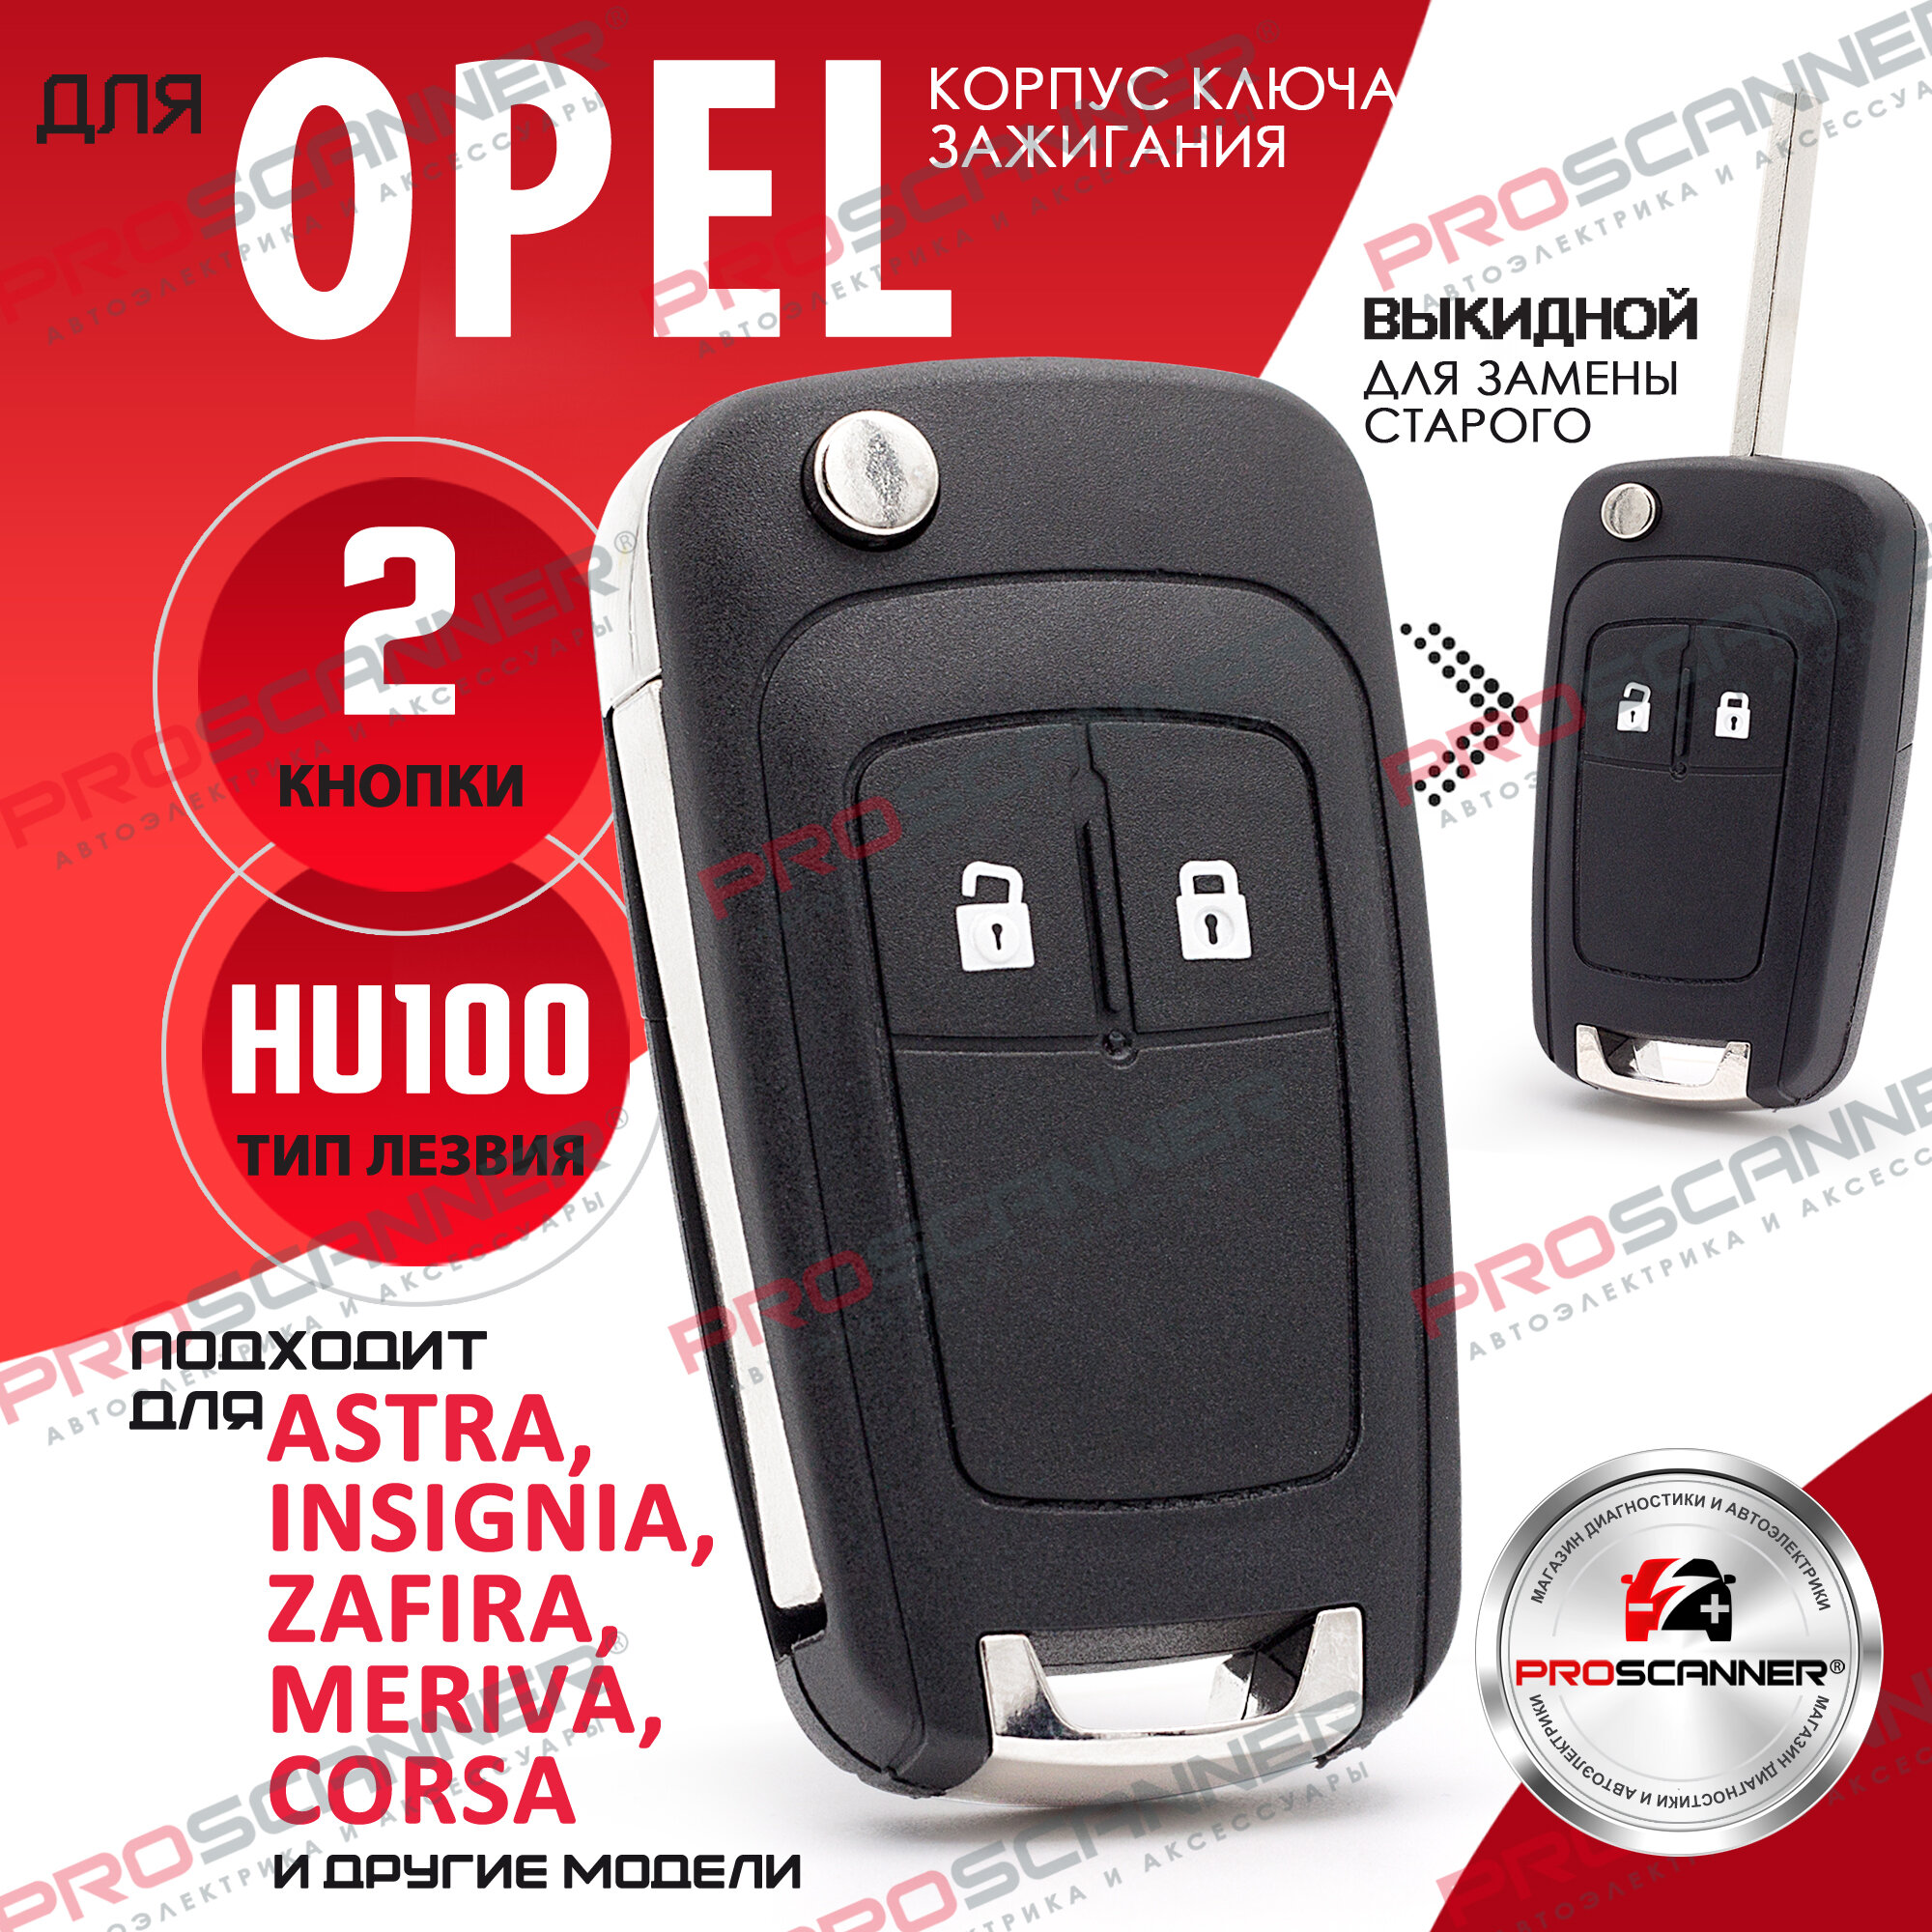 Корпус выкидного ключа для Opel Antara Astra Family Corsa Insignia Mokka Vectra Zafira - 1 штука (2 кнопочный ключ лезвие HU100)